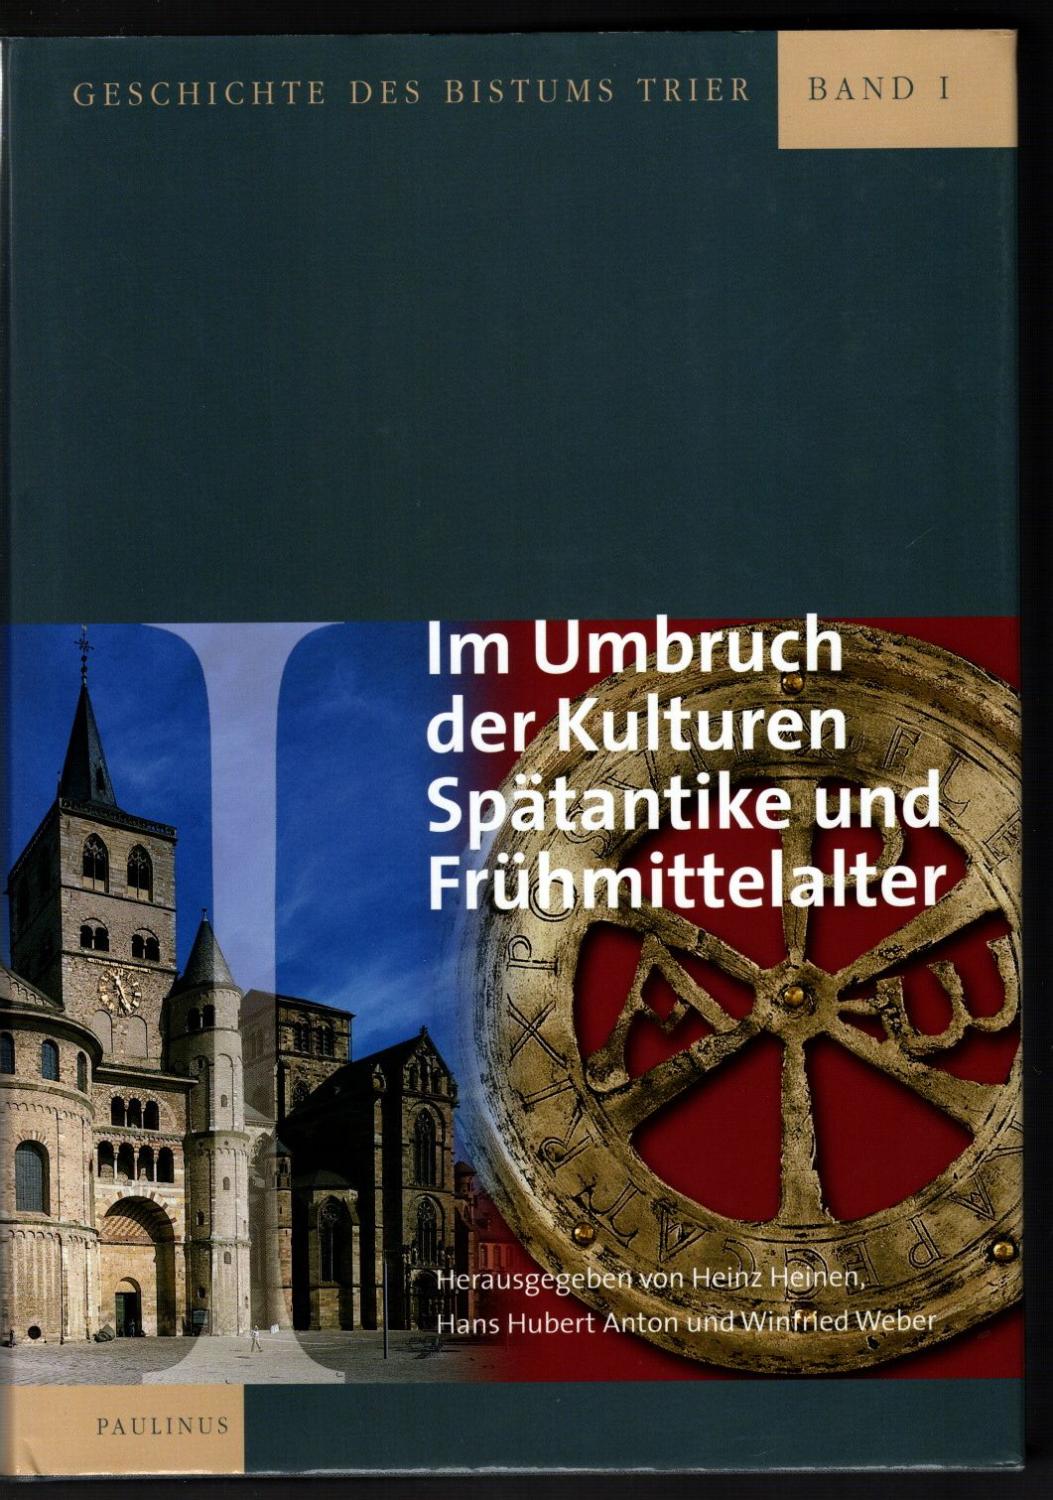 Geschichte des Bistums Trier. Band 1: Im Umbruch der Kulturen. Spätantike und Frühmittelalter. - Heinen, Heinz / Anton, Hans Hubert / Weber, Winfried (Hrsg.)